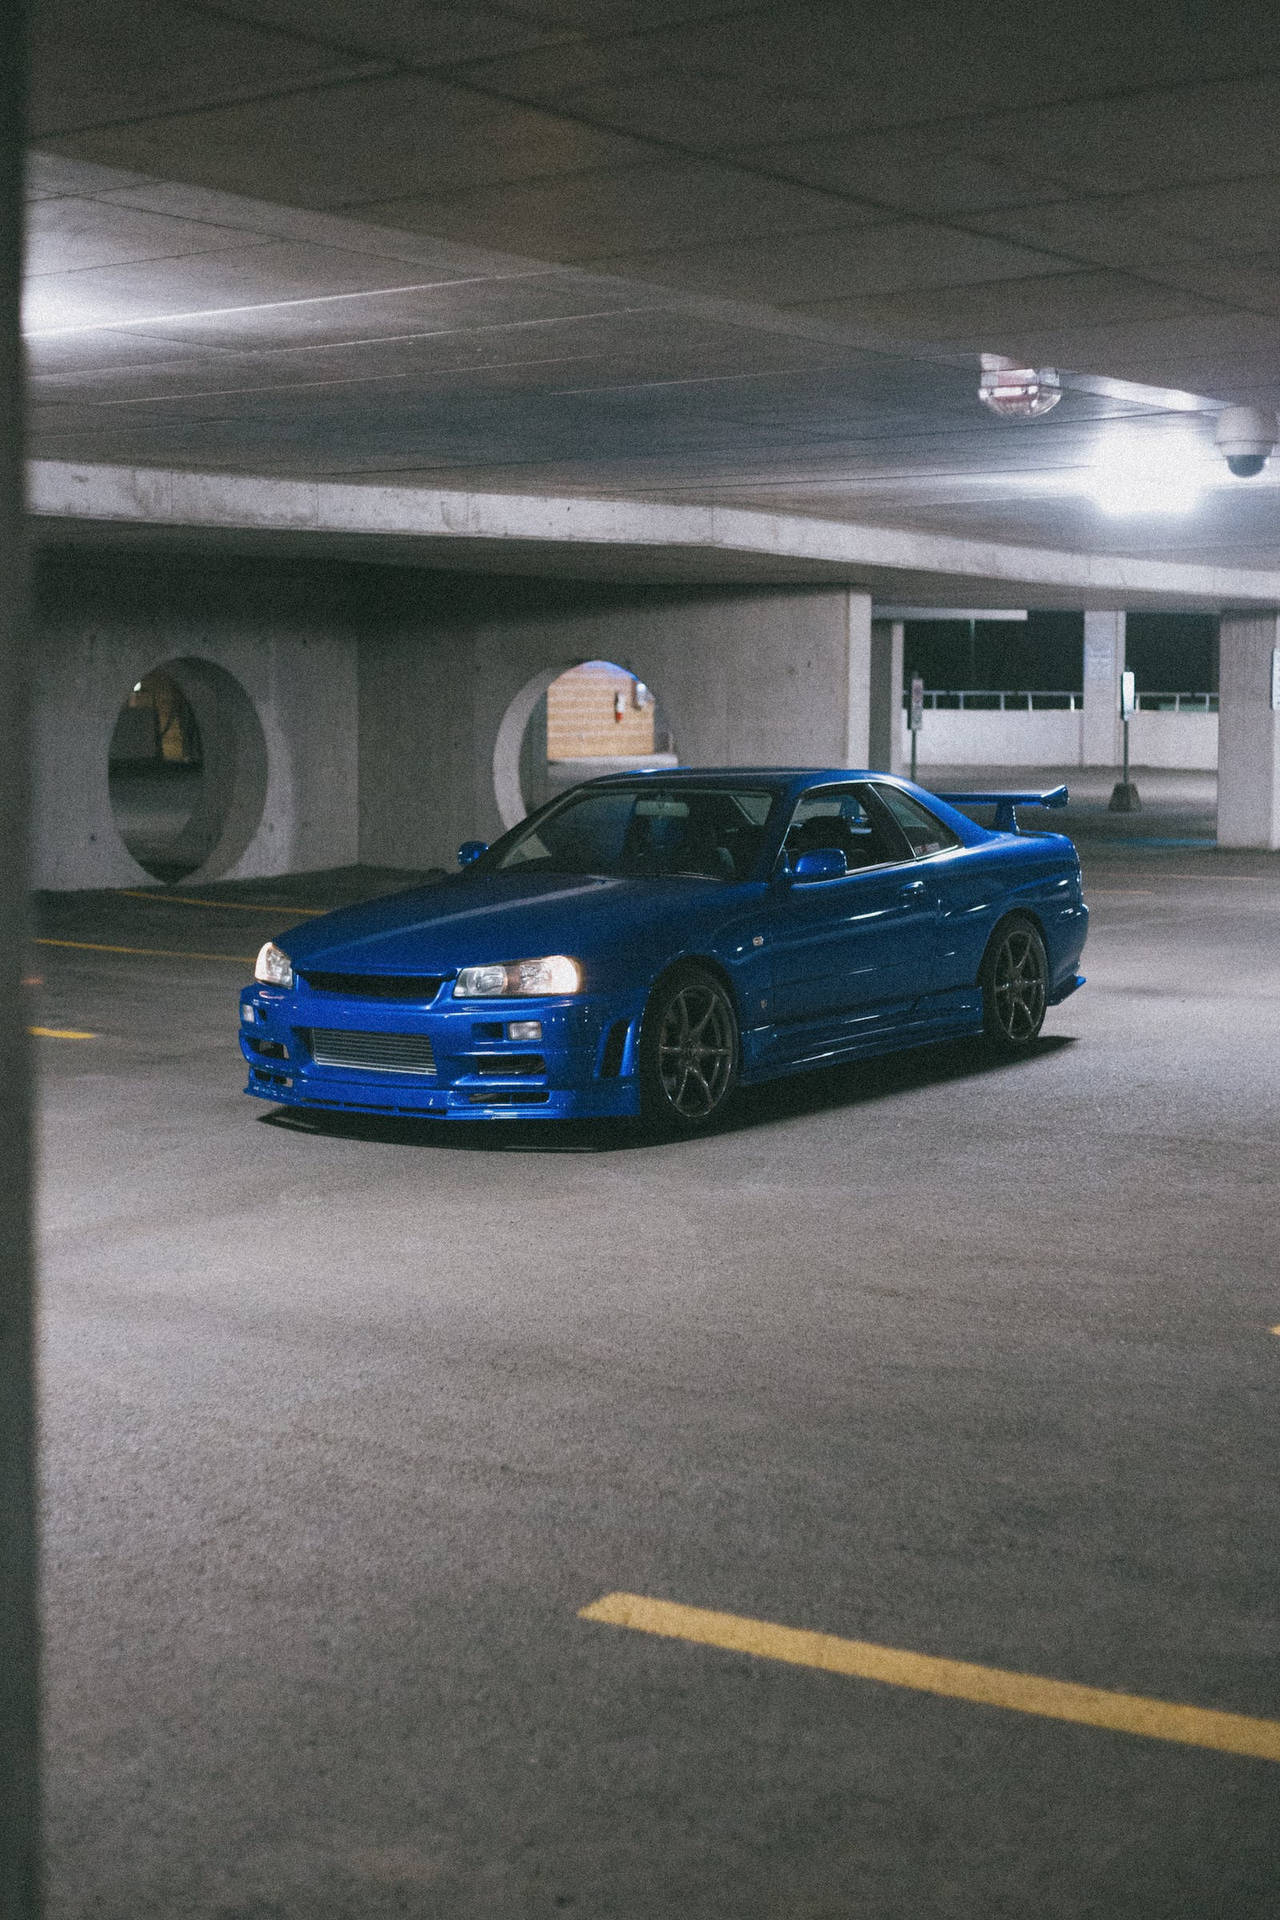 Parked Indoors Blue Nissan Gt R 4k